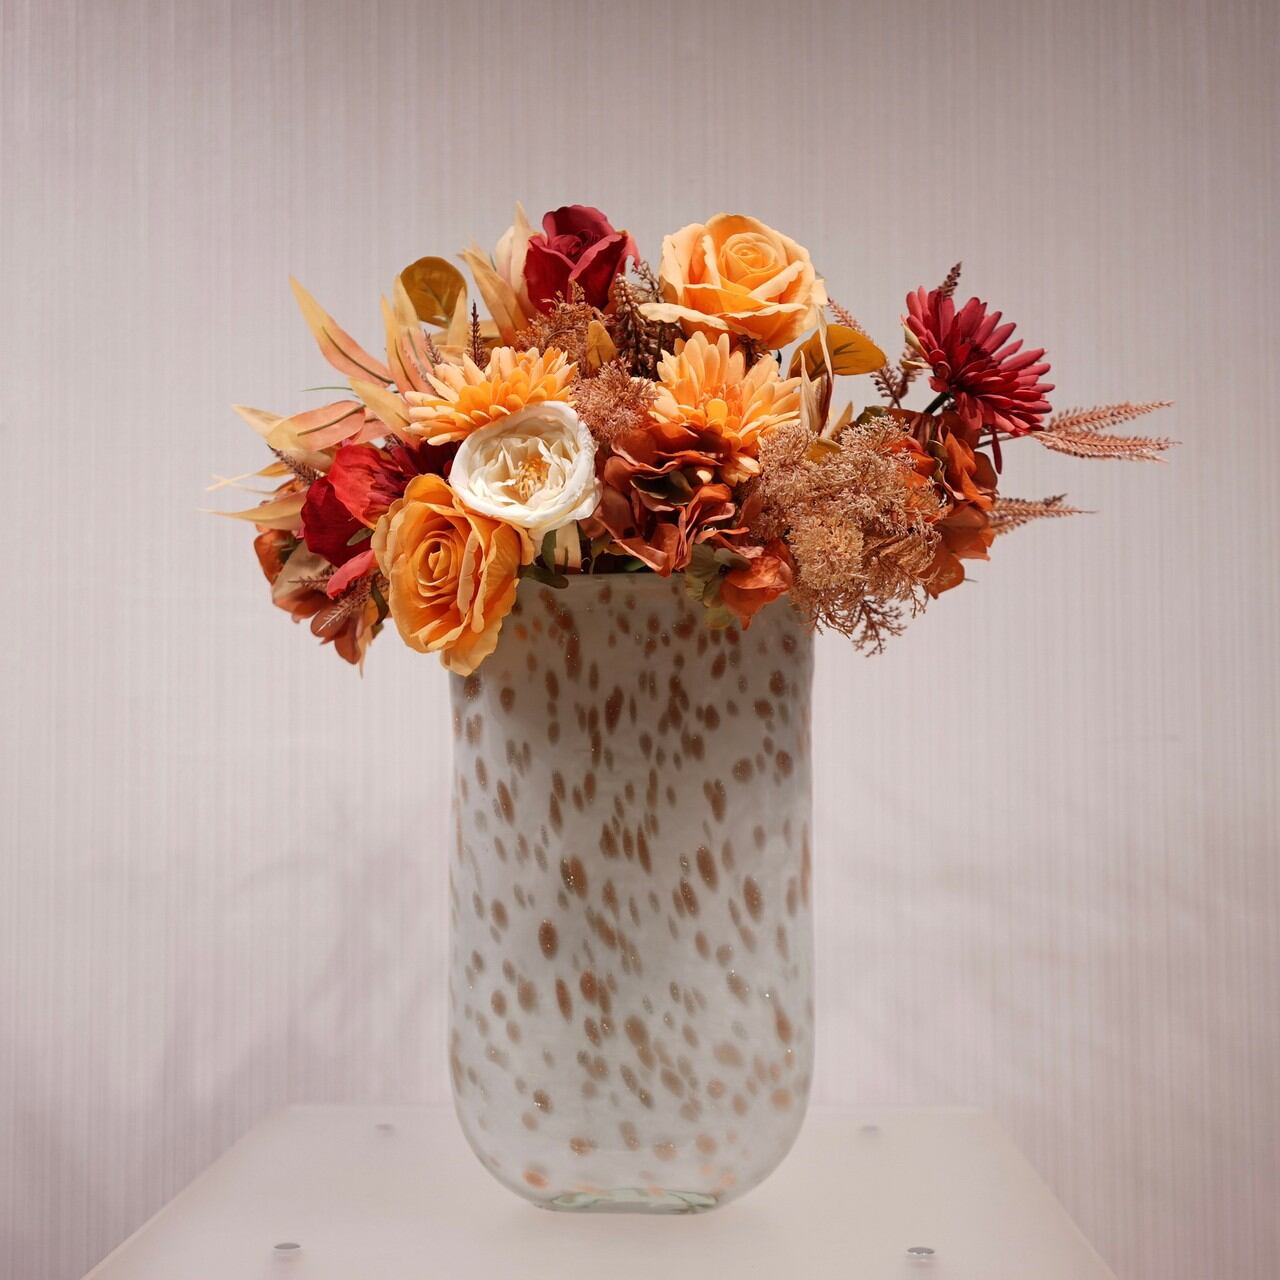 中古フラワーベース 花瓶 ガラス 造花付き 北欧 ナチュラル オブジェ